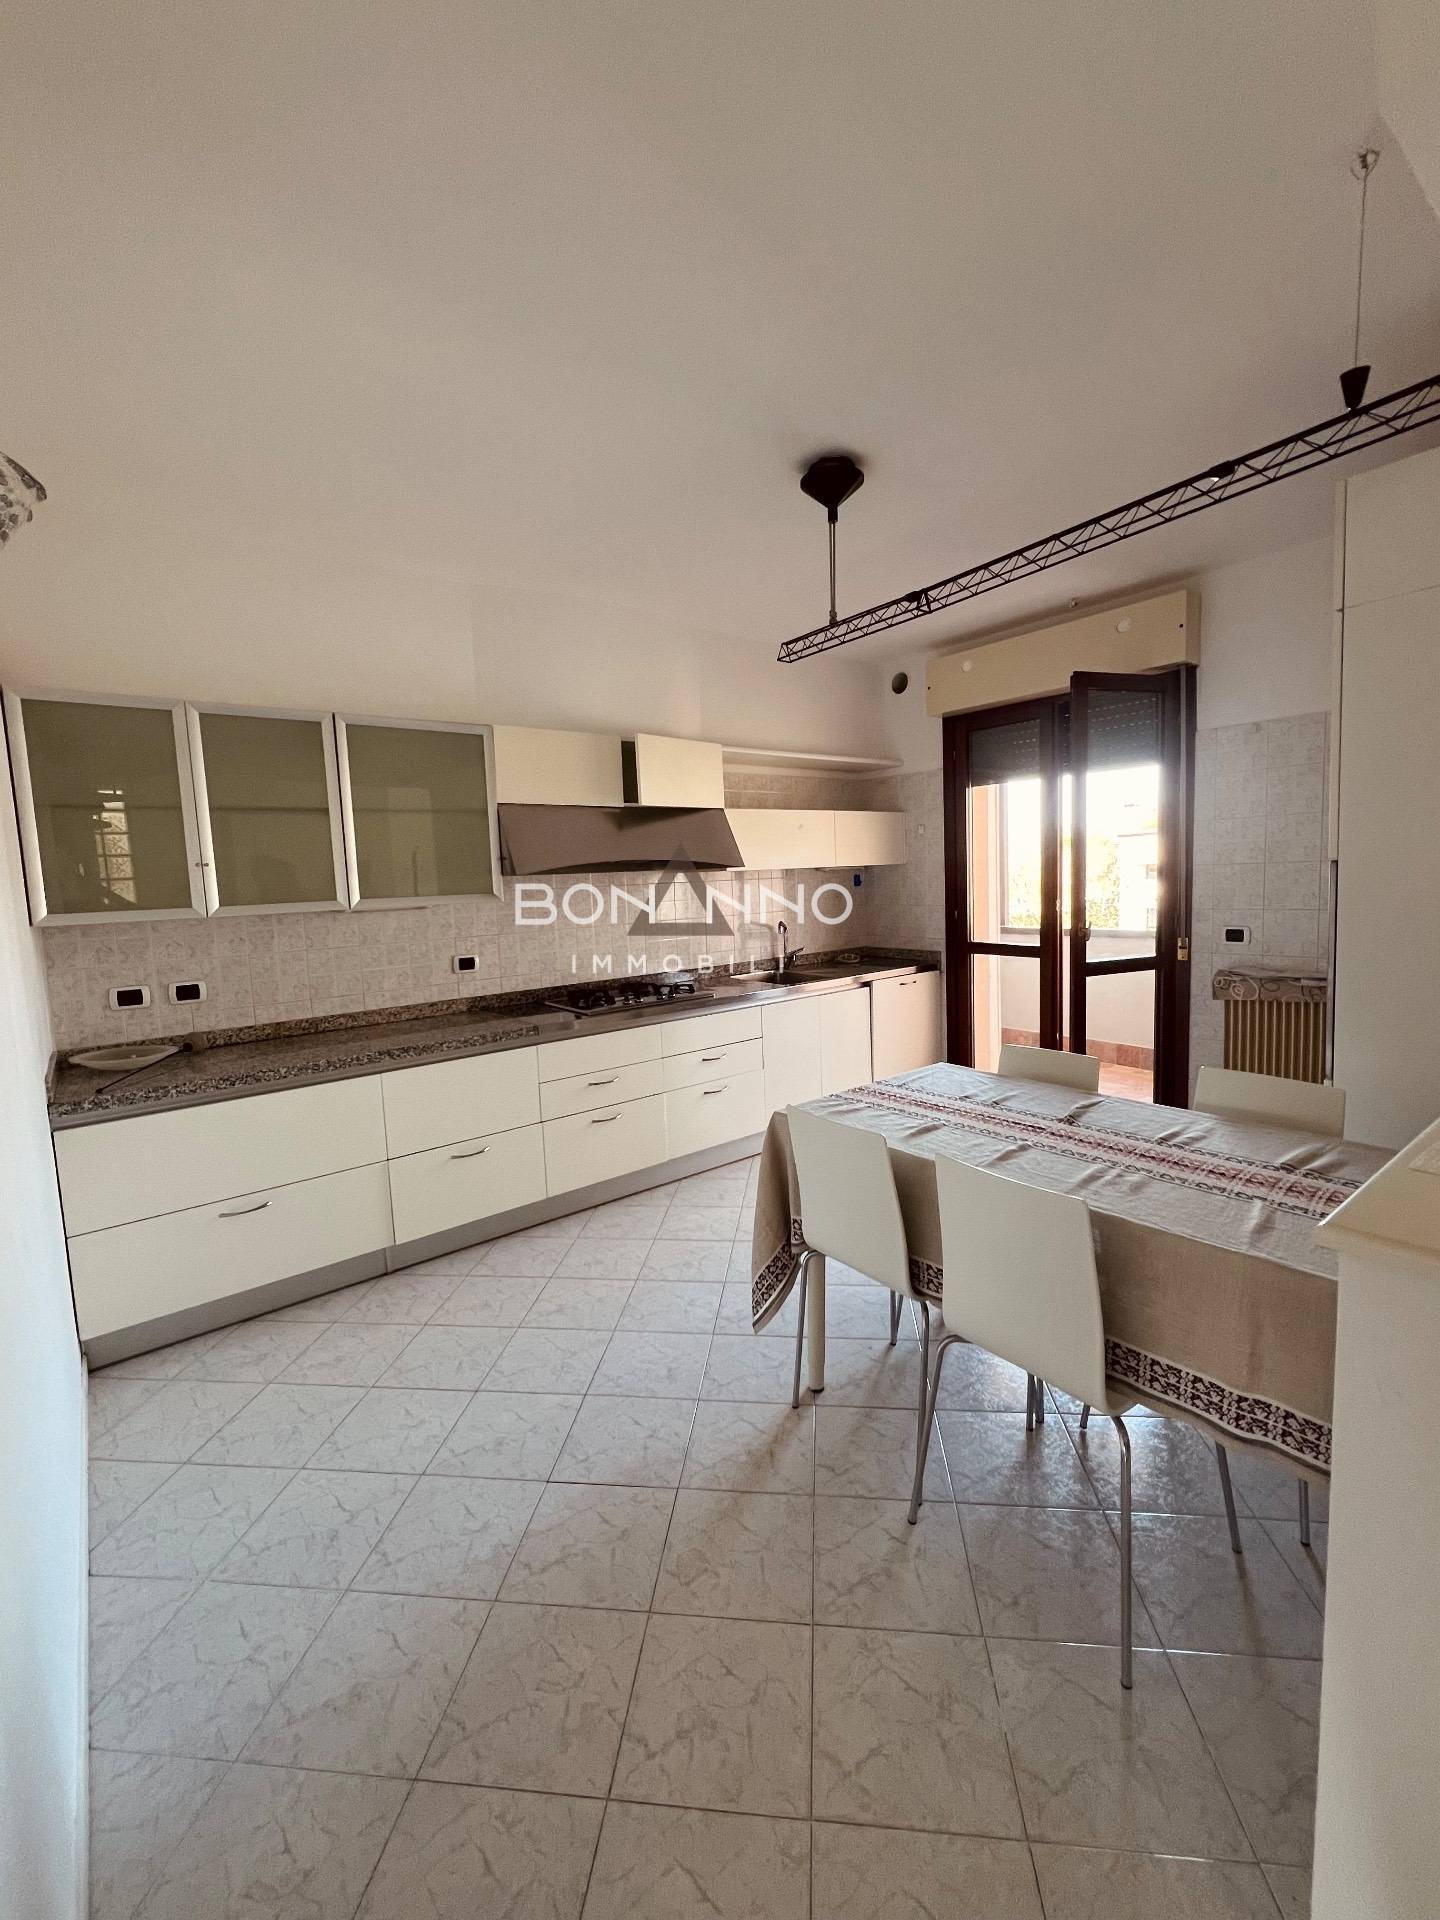 Appartamento in vendita a Castelfranco Veneto, 4 locali, prezzo € 215.000 | PortaleAgenzieImmobiliari.it